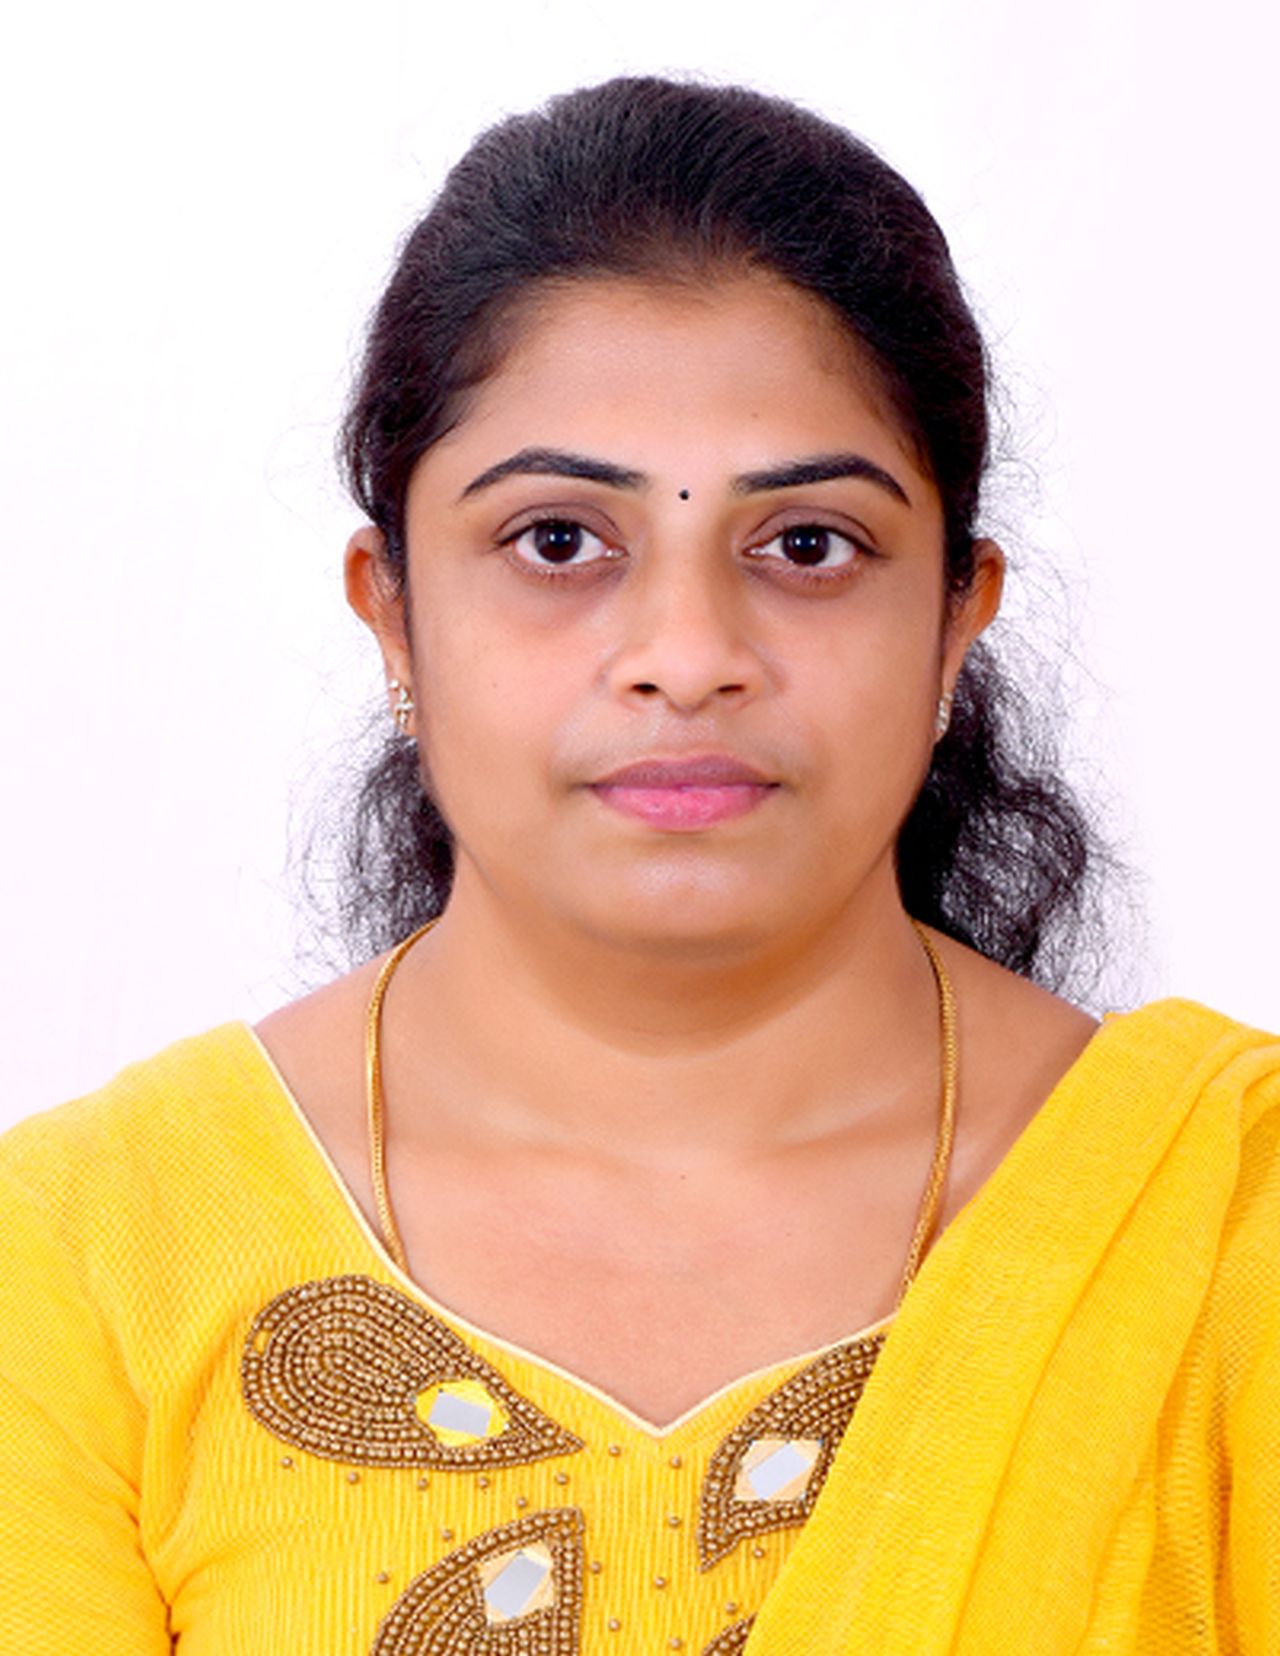 Suji A Coimbatore Tamil Nadu Teacher Teaches Private Lessons Online